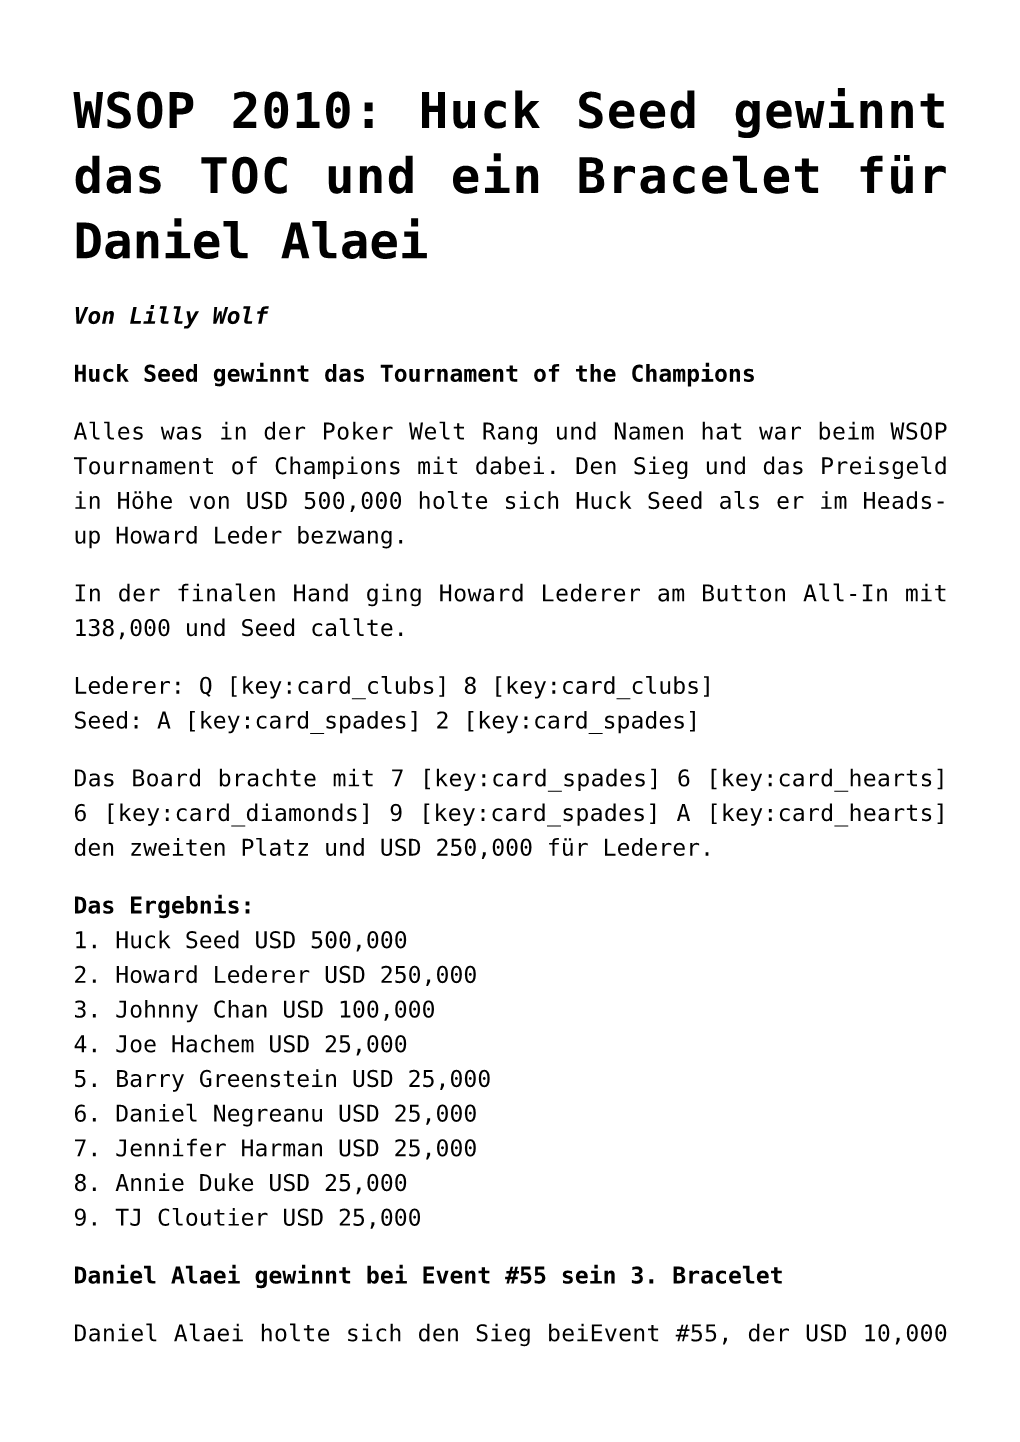 WSOP 2010: Huck Seed Gewinnt Das TOC Und Ein Bracelet Für Daniel Alaei